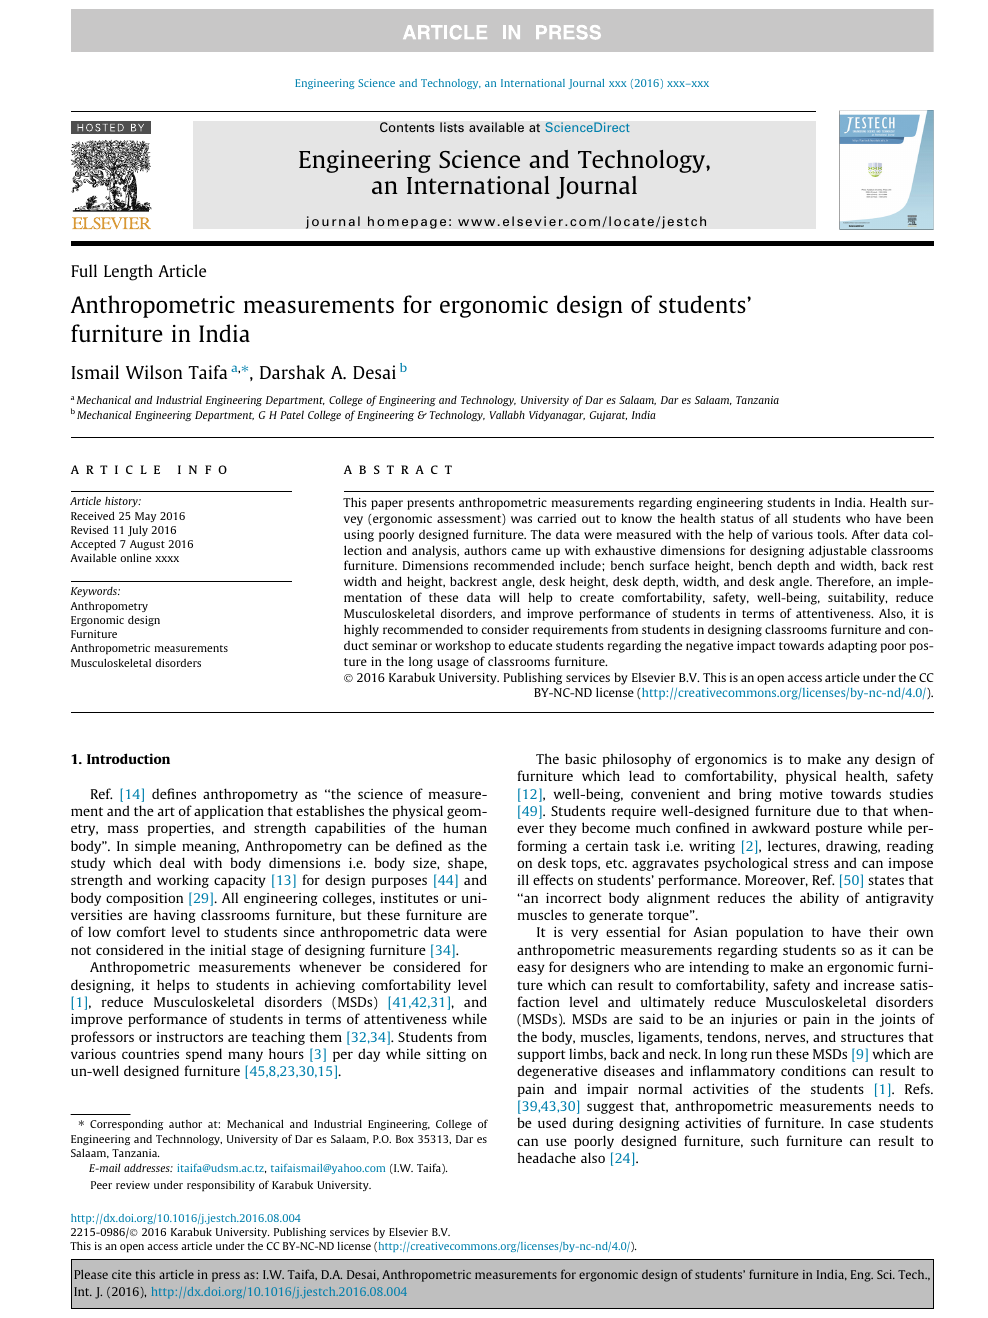 Indian anthropometric dimensions for ergonomic design practice pdf ...